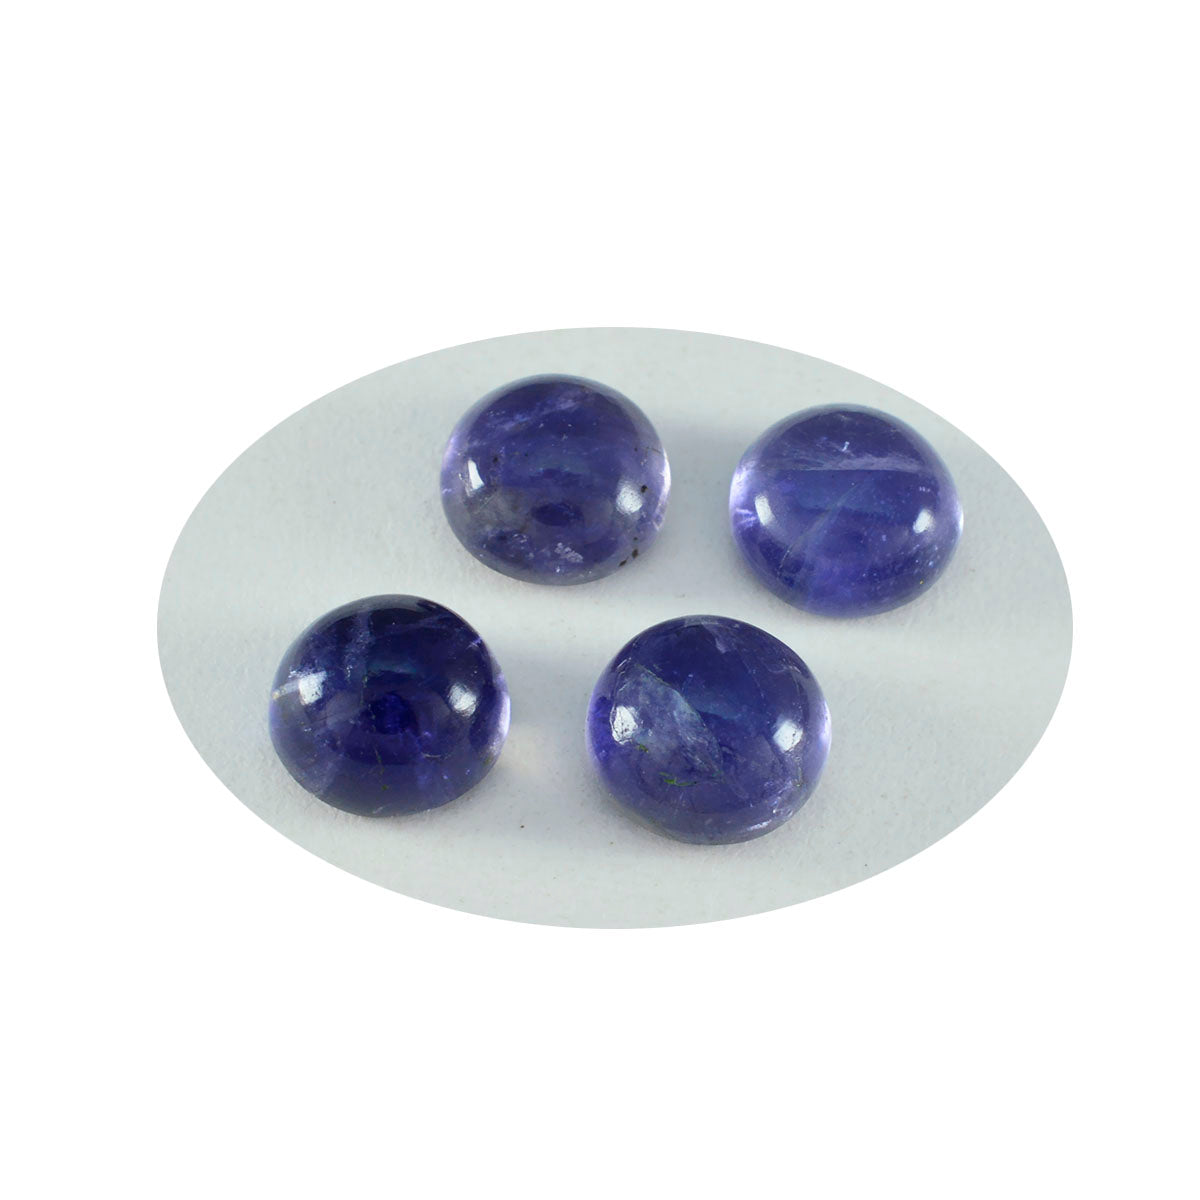 Riyogems 1 pieza cabujón de iolita azul 13x13 mm forma redonda piedra de calidad atractiva